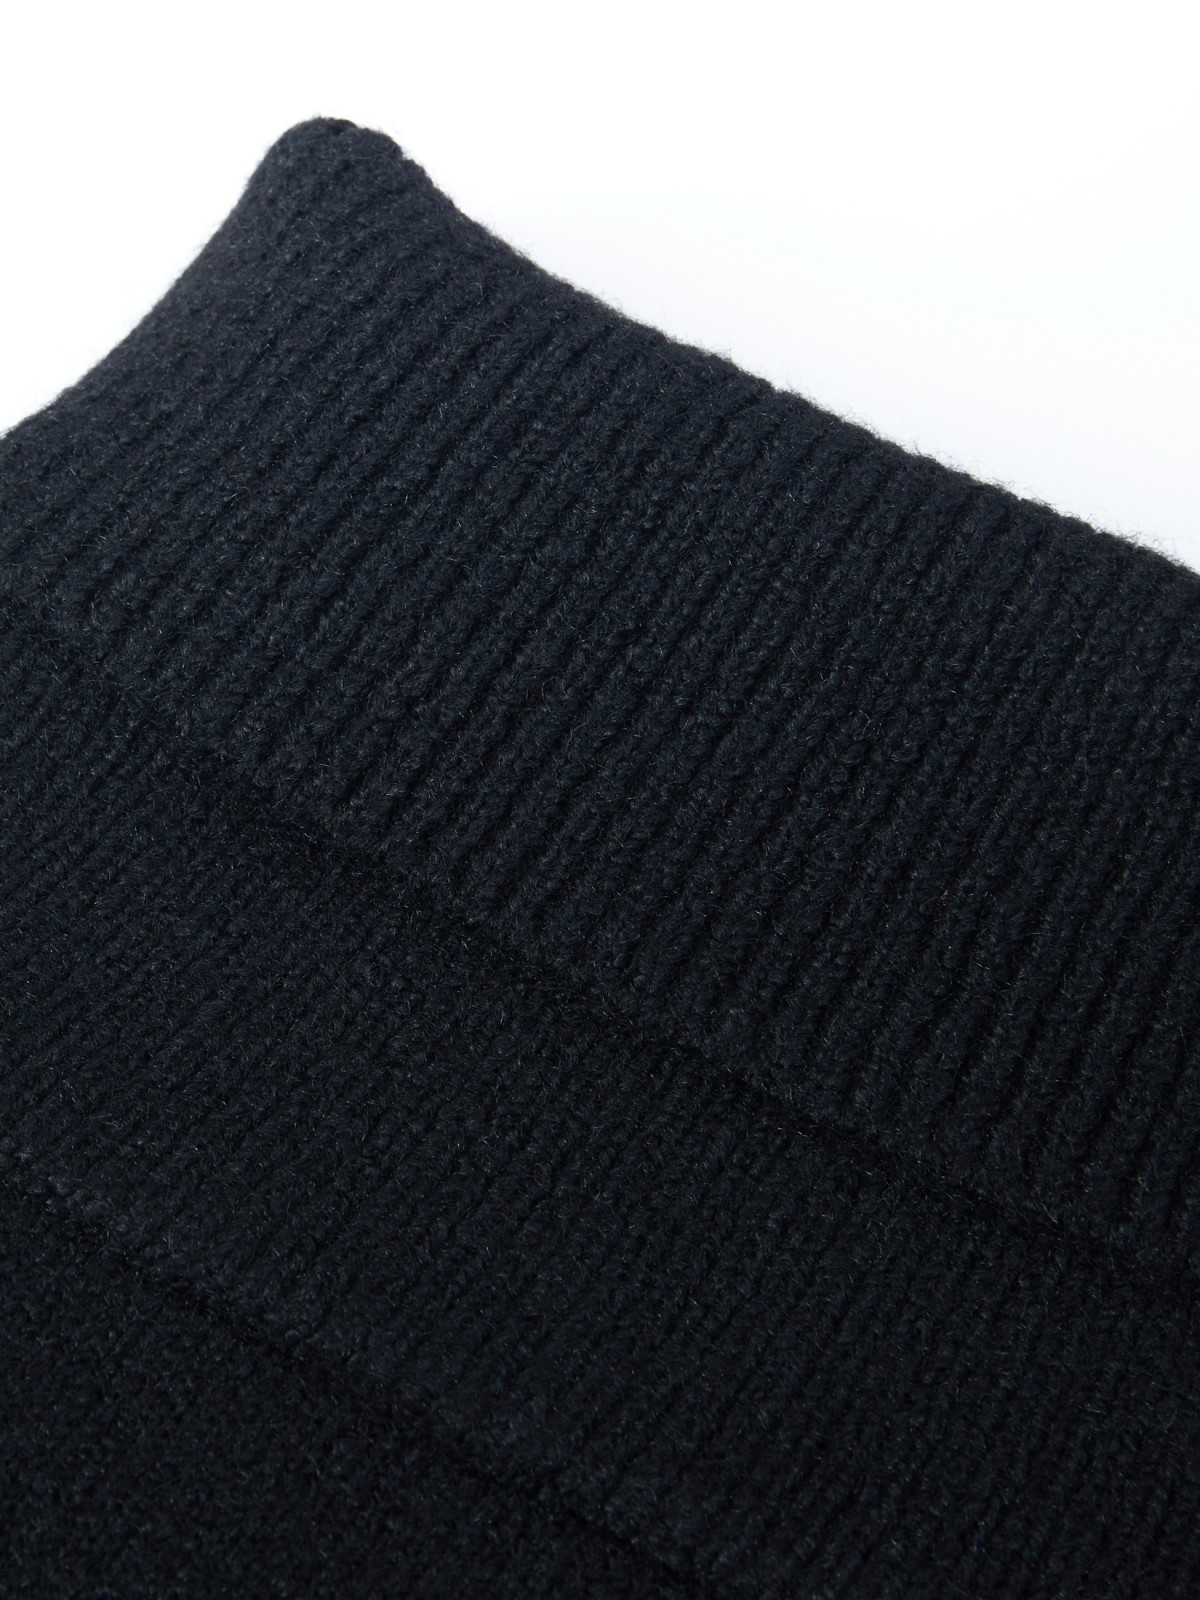 Платок (шарф) zolla 02333917J275, цвет черный, размер No_size - фото 4